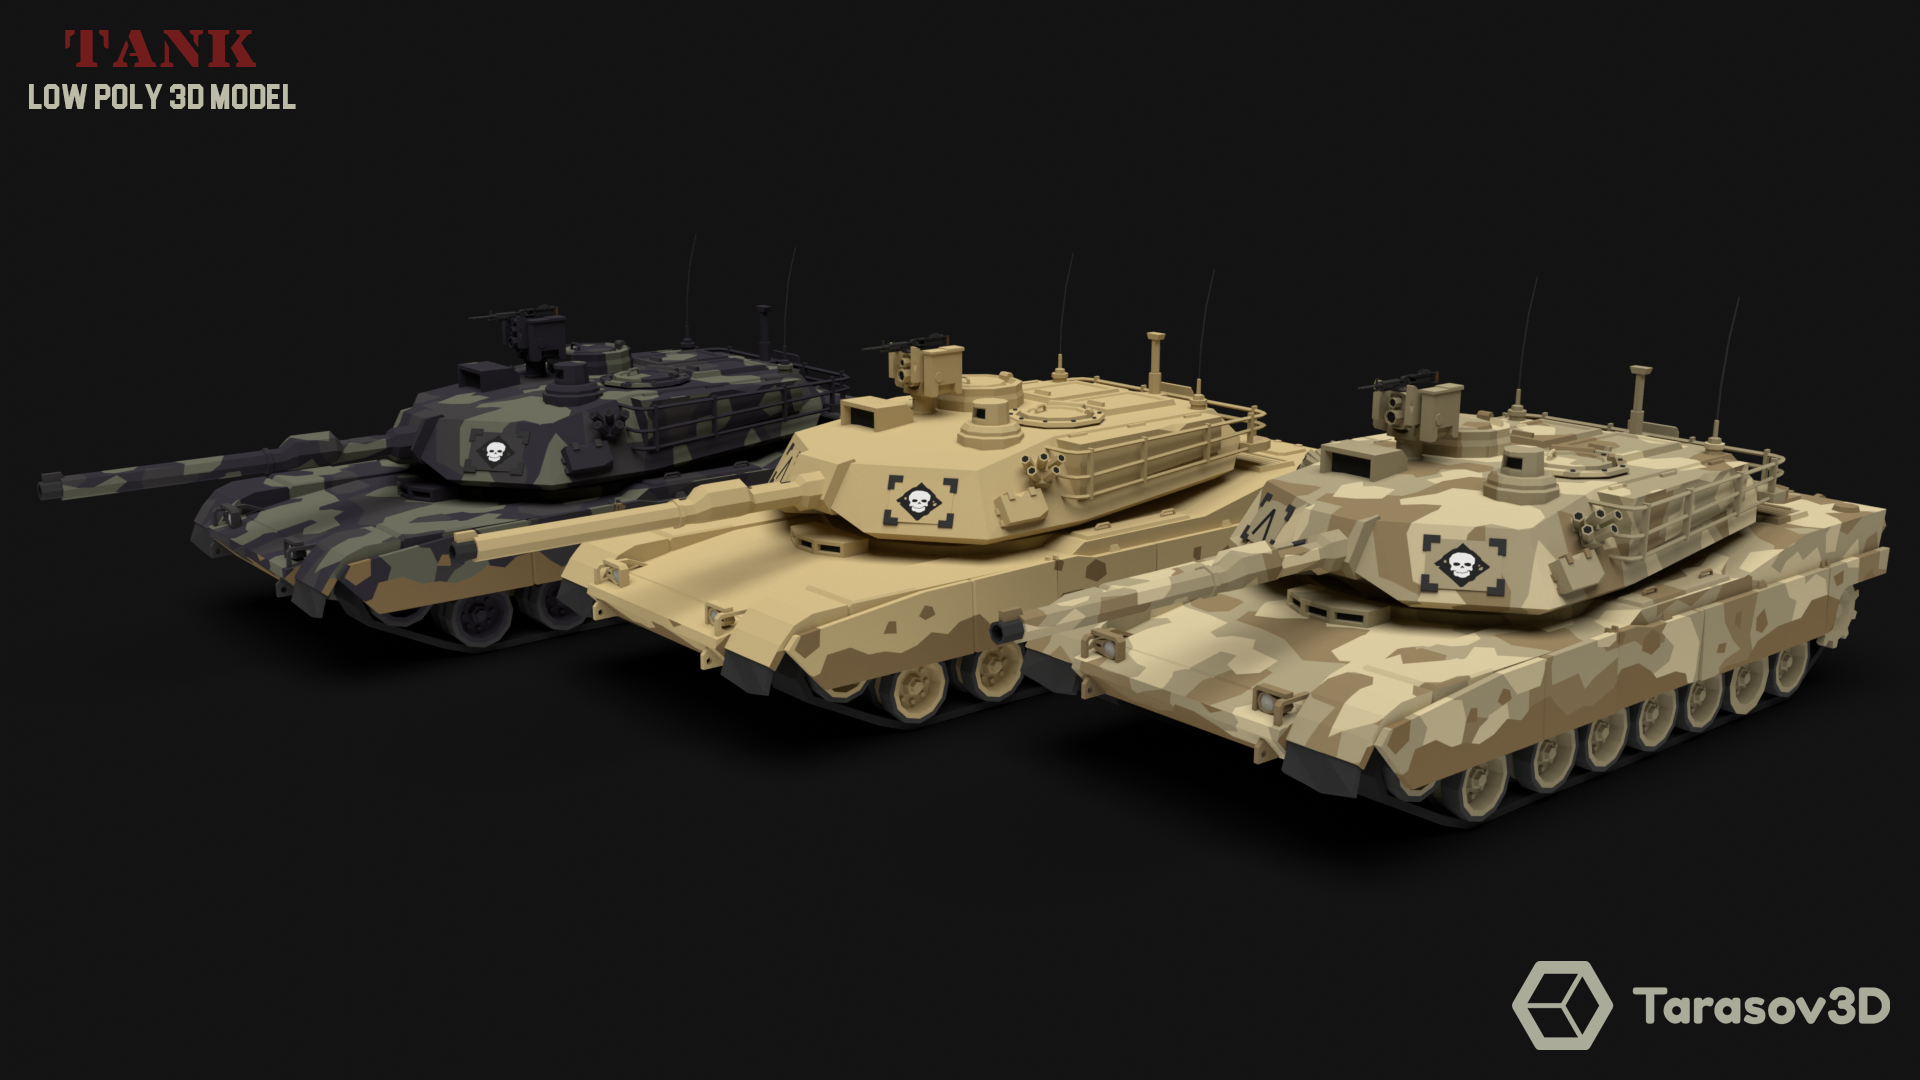 Tank LowPoly 3D model